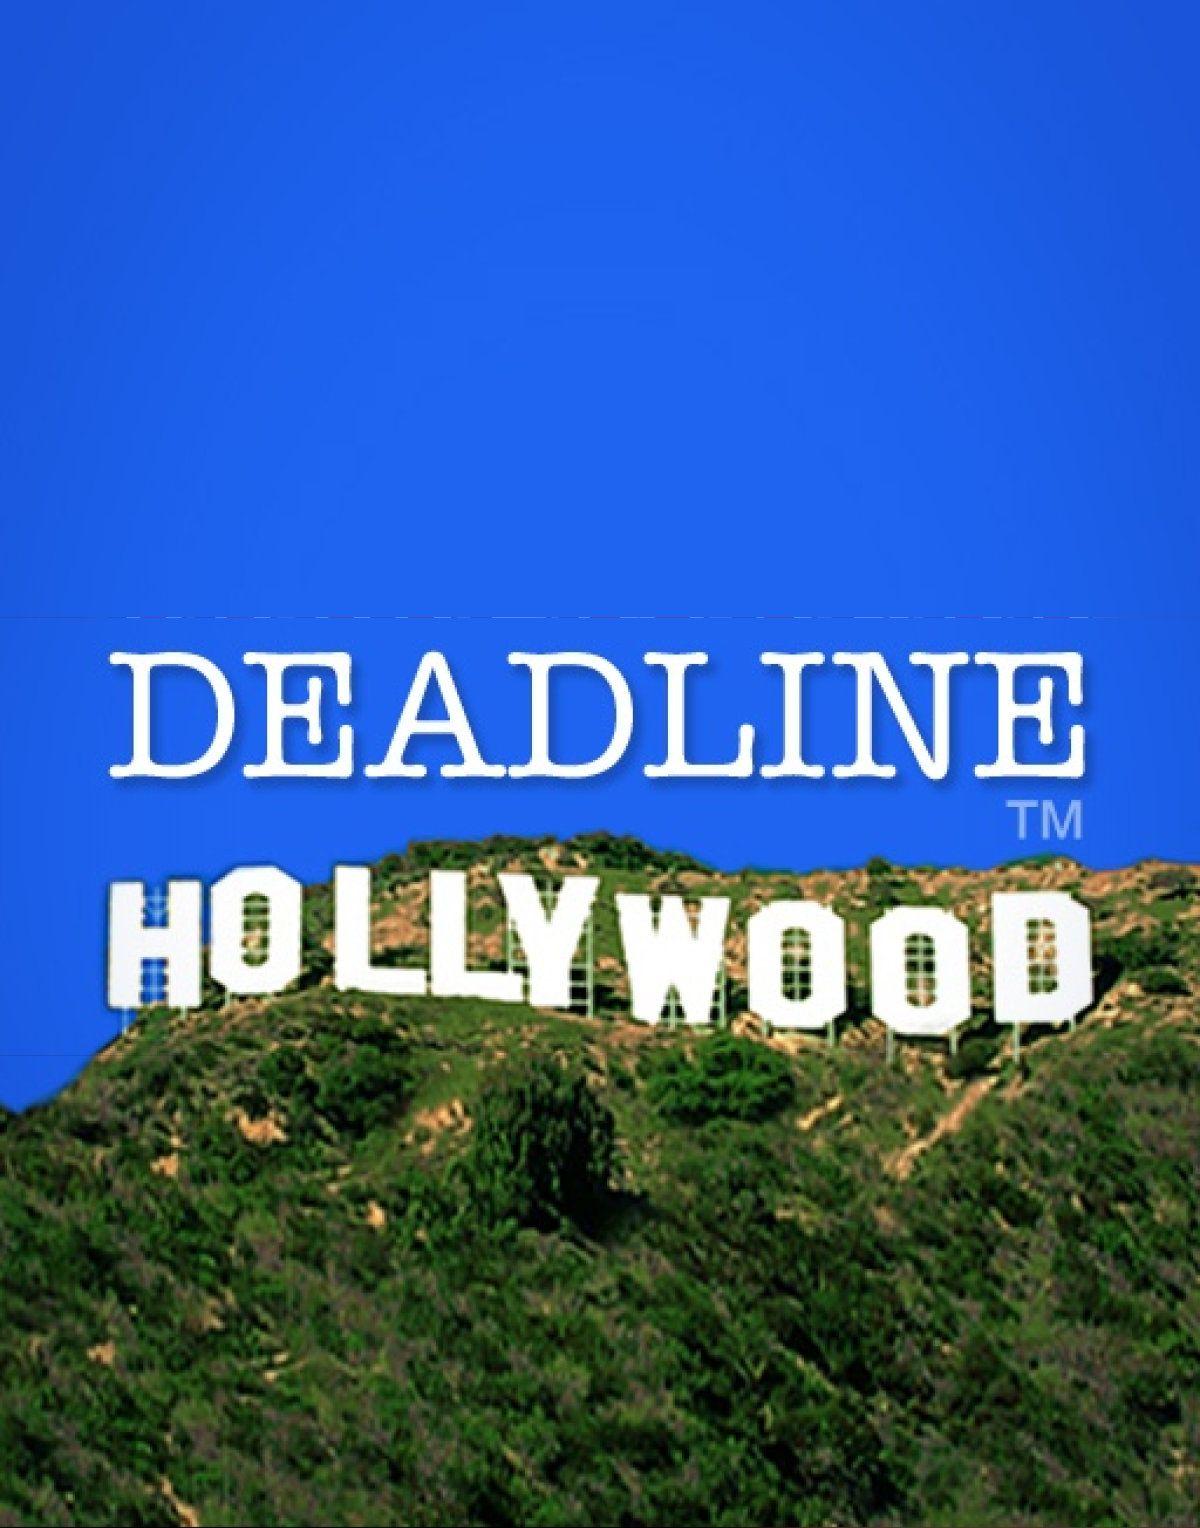 Deadline.com Logo - Deadline Hollywood - Cathy Byrd